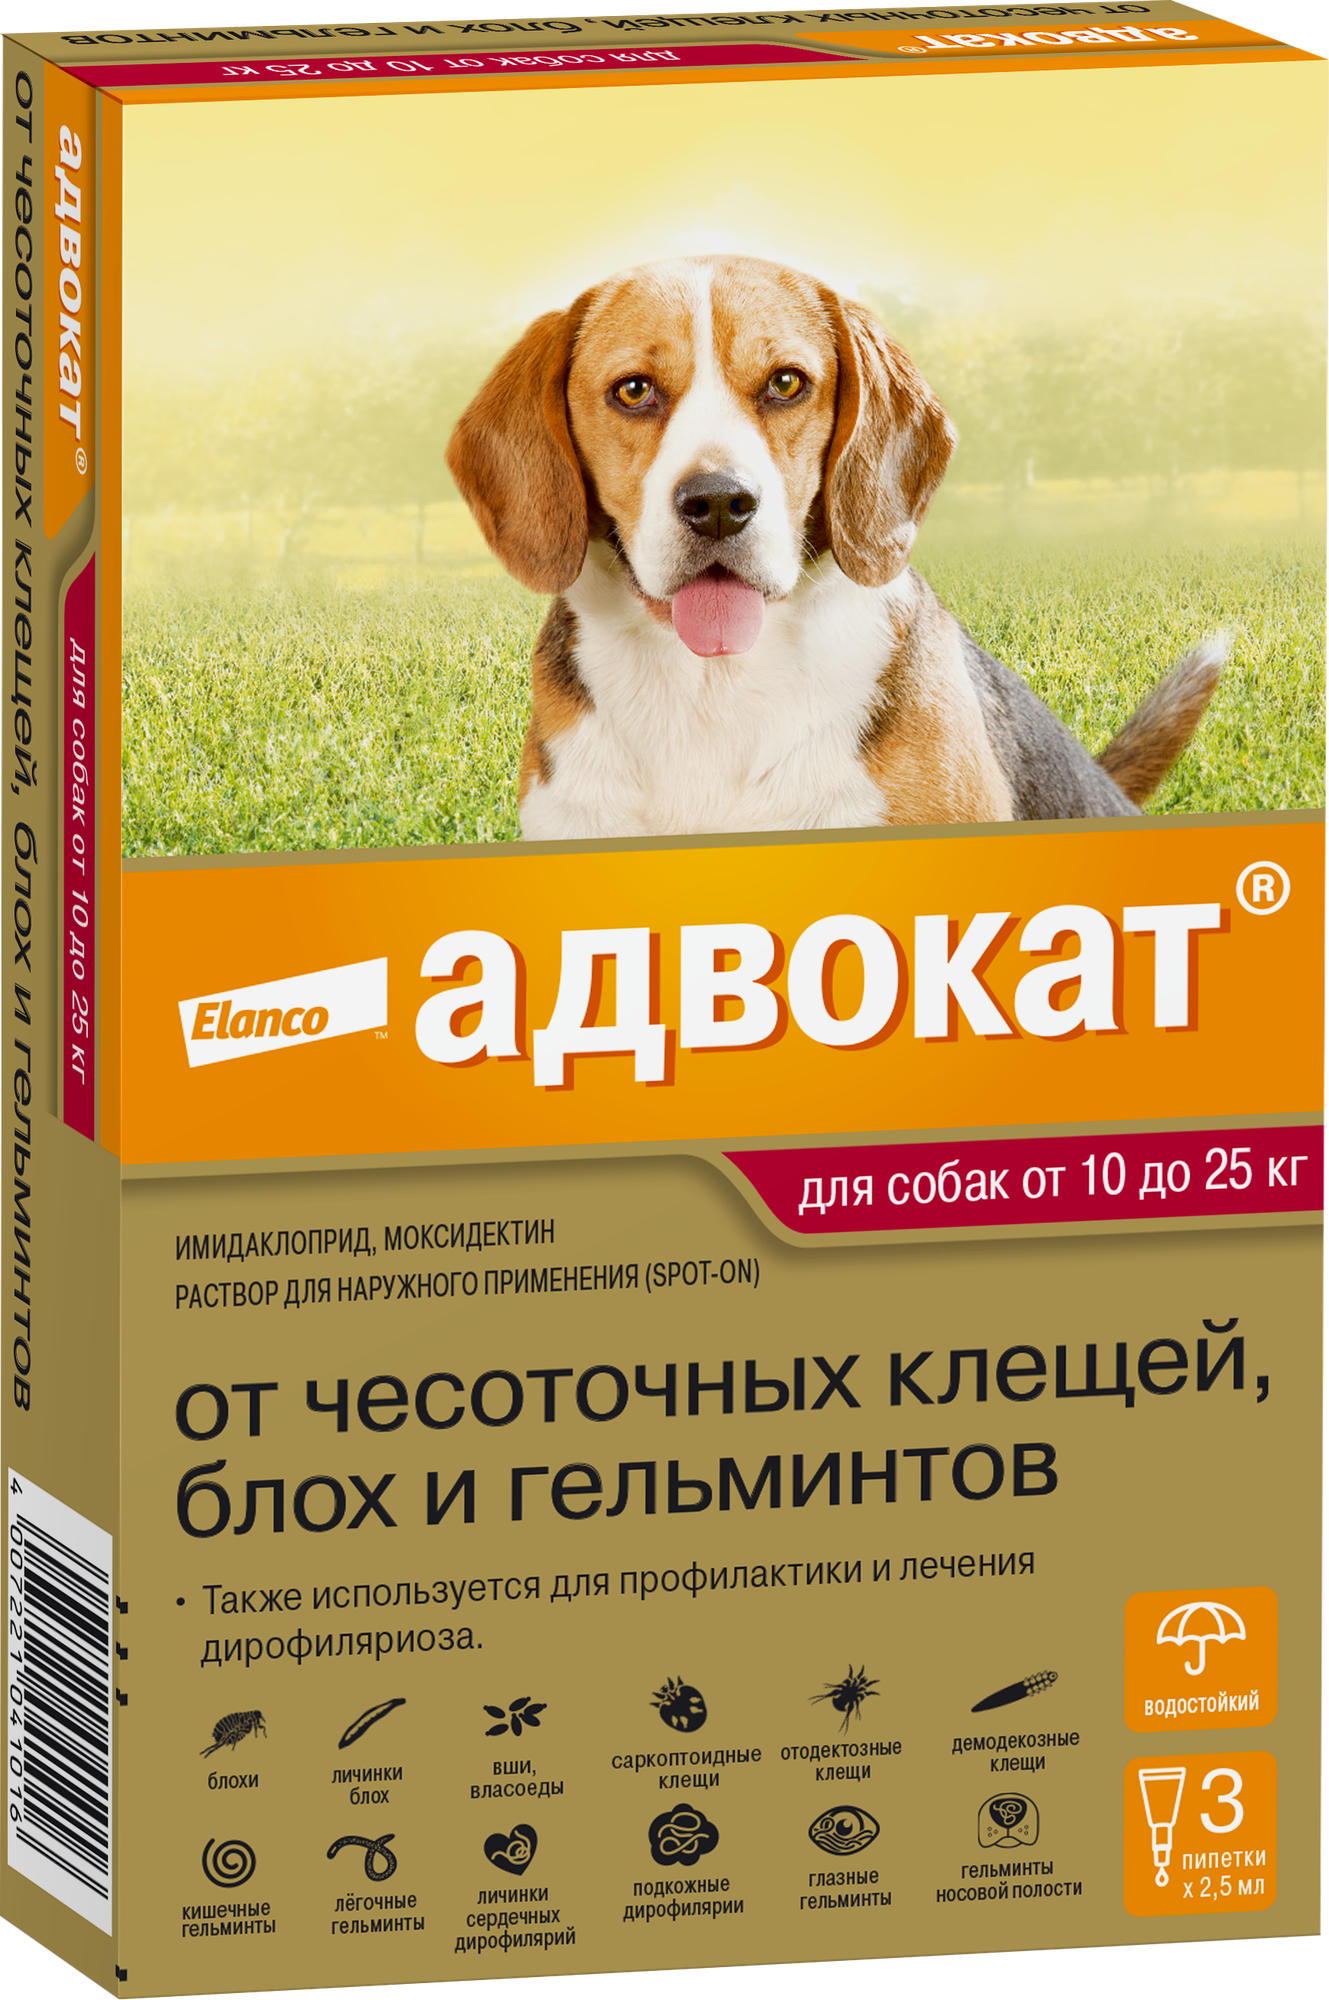 Elanco Капли от чесоточных клещей блох и гельминтов для собак от 10 до 25 кг